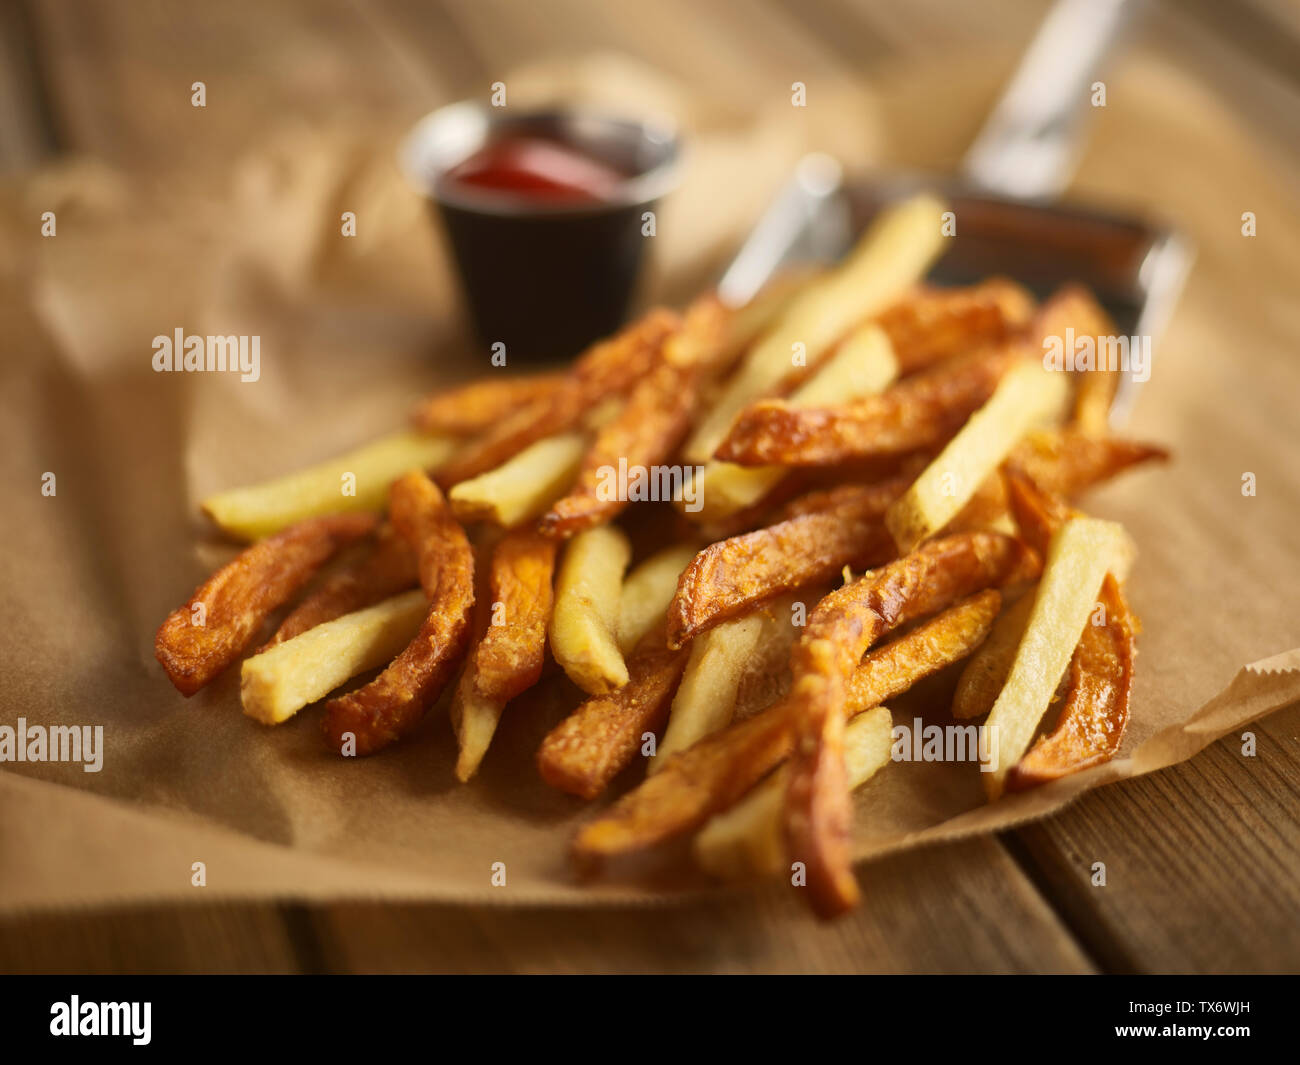 sweet potato fries Stock Photo